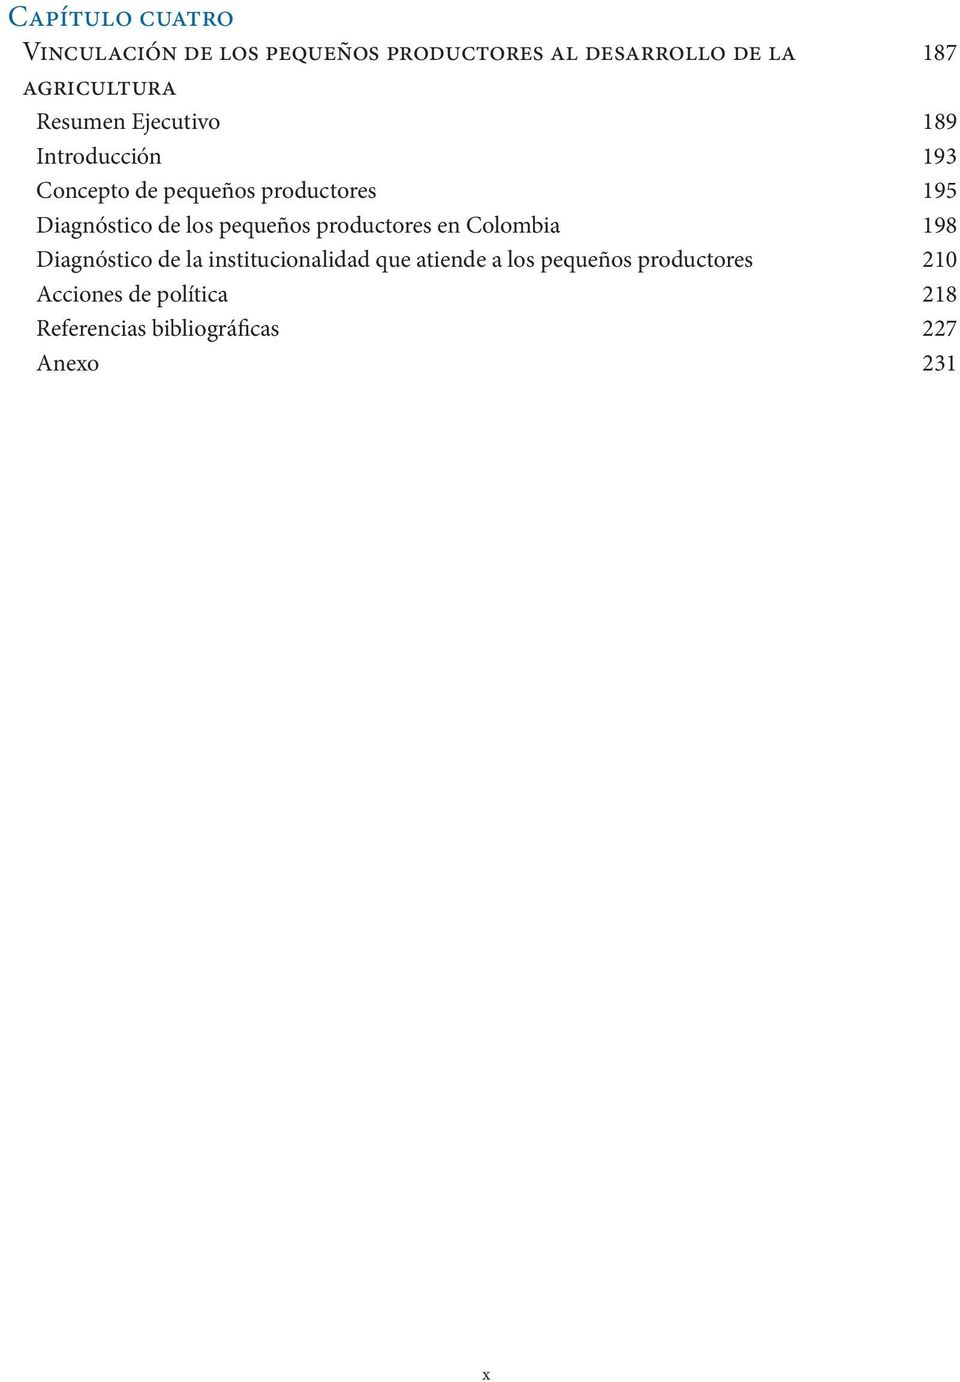 Diagnóstico de los pequeños productores en Colombia 198 Diagnóstico de la institucionalidad que